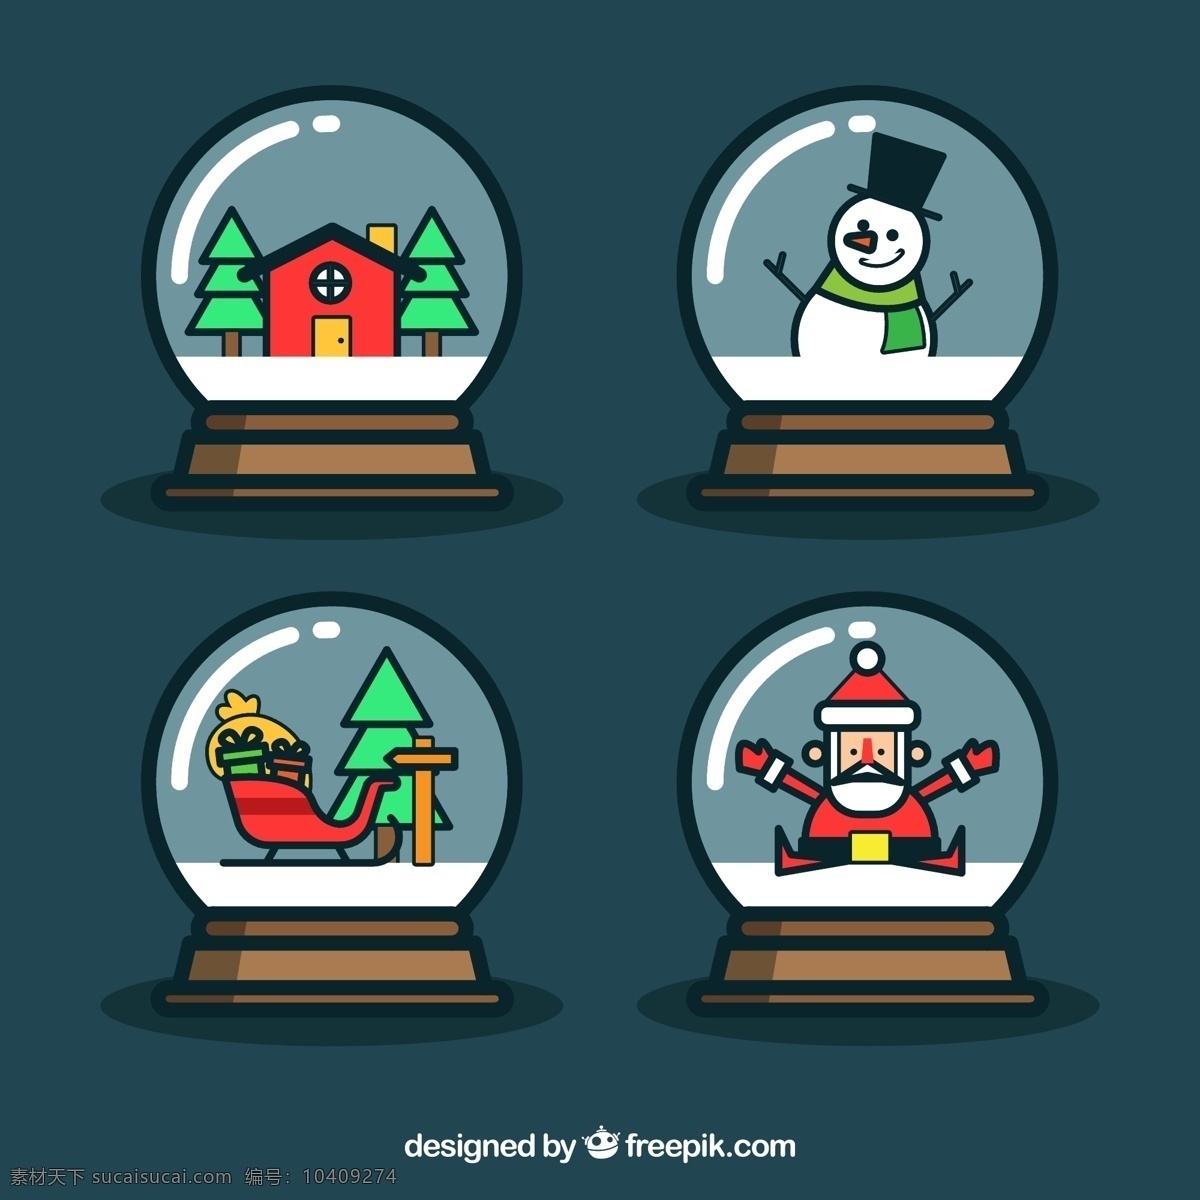 款 可爱 圣诞 雪花 玻璃球 矢量 房屋 圣诞树 雪人 圣诞雪橇 圣诞老人 雪地 圣诞节 雪花玻璃球 水晶球 矢量图 ai格式 最新矢量图 vi设计